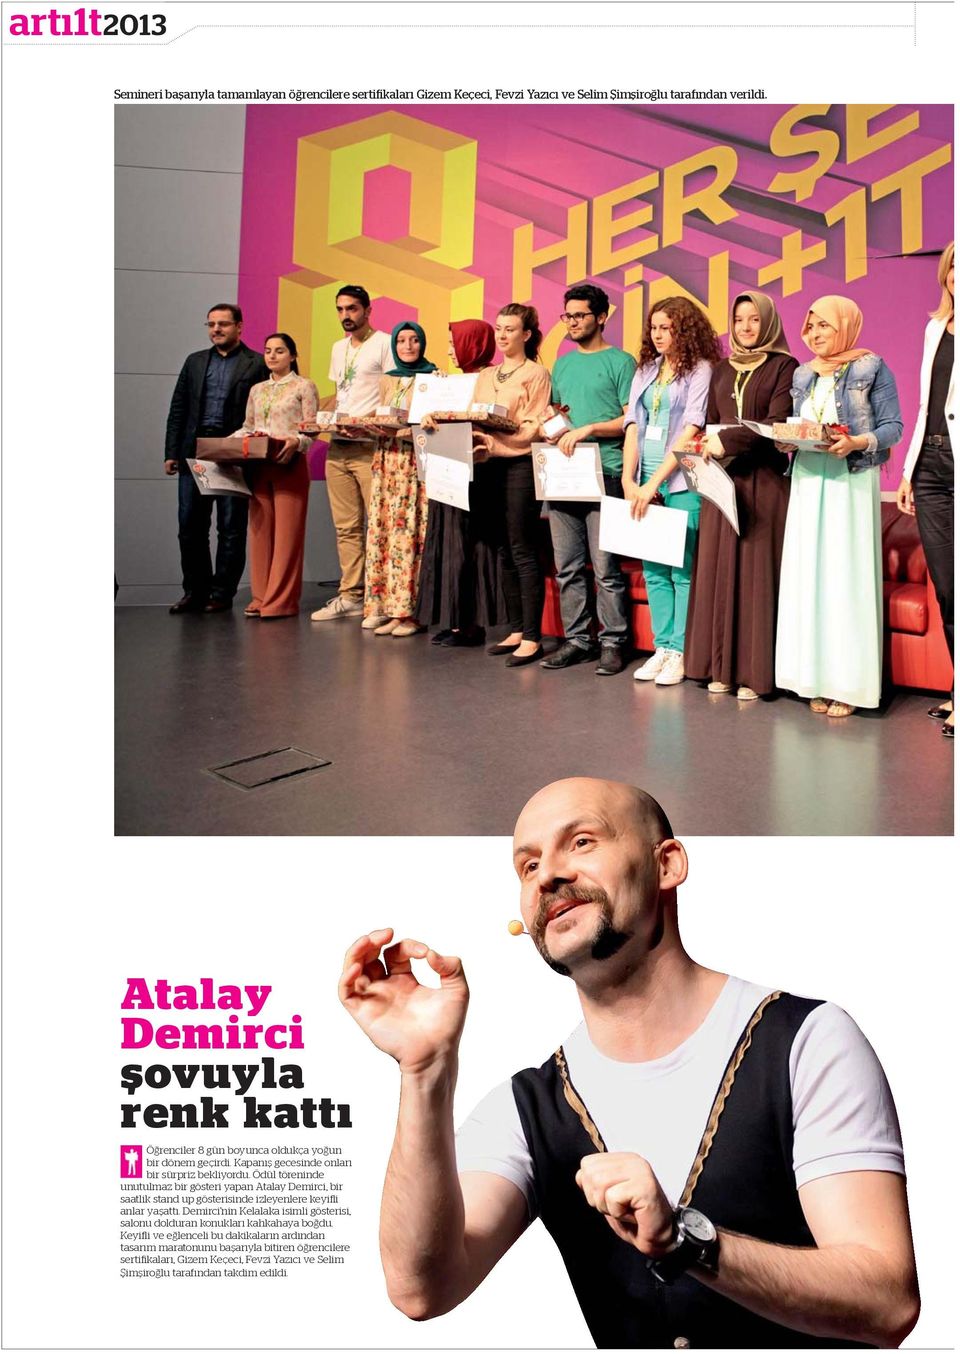 Ödül töreninde unutulmaz bir gösteri yapan Atalay Demirci, bir saatlik stand up gösterisinde izleyenlere keyi i anlar ya att.